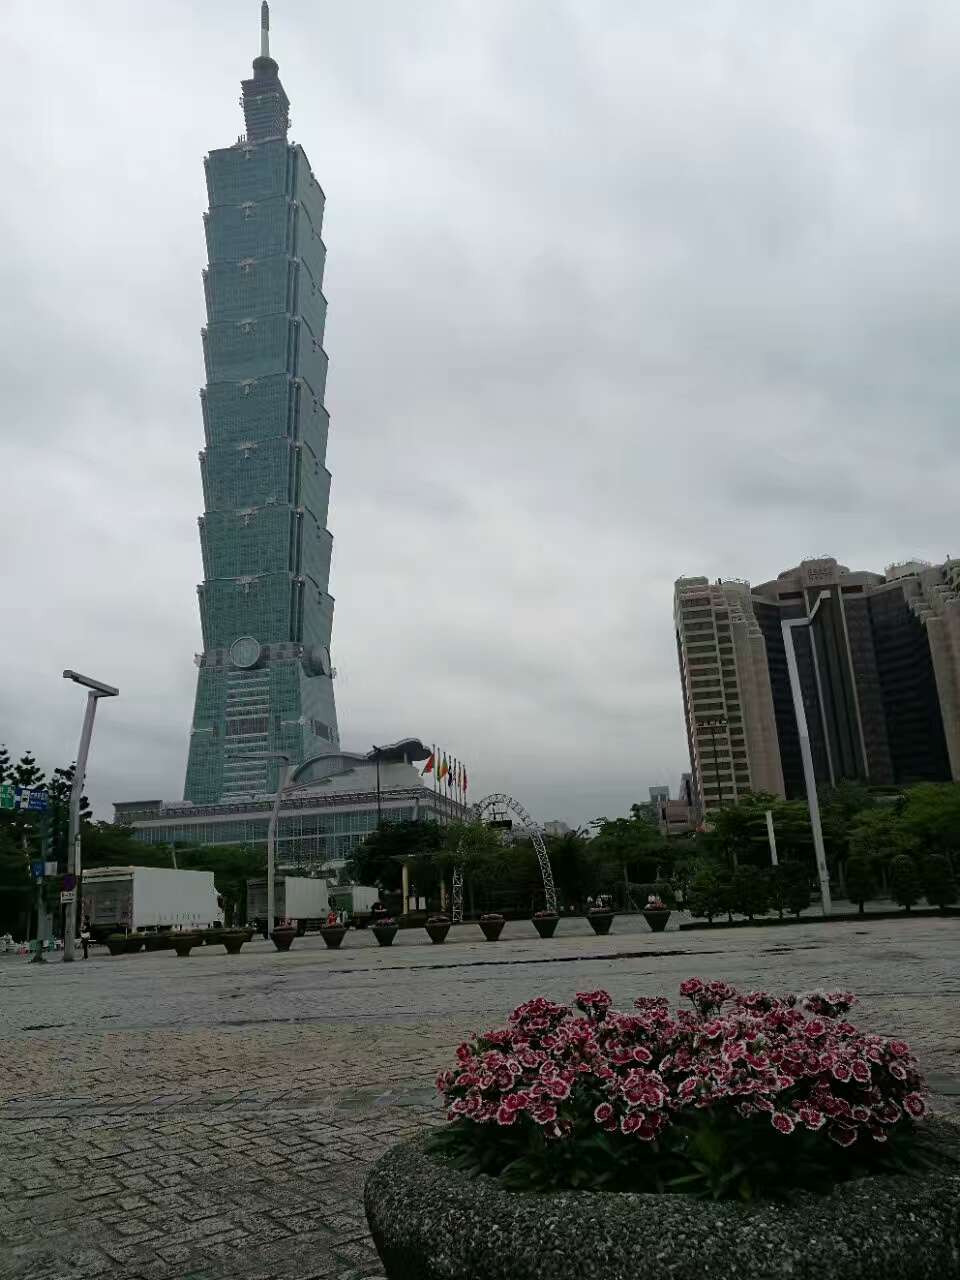 台北市政府大楼